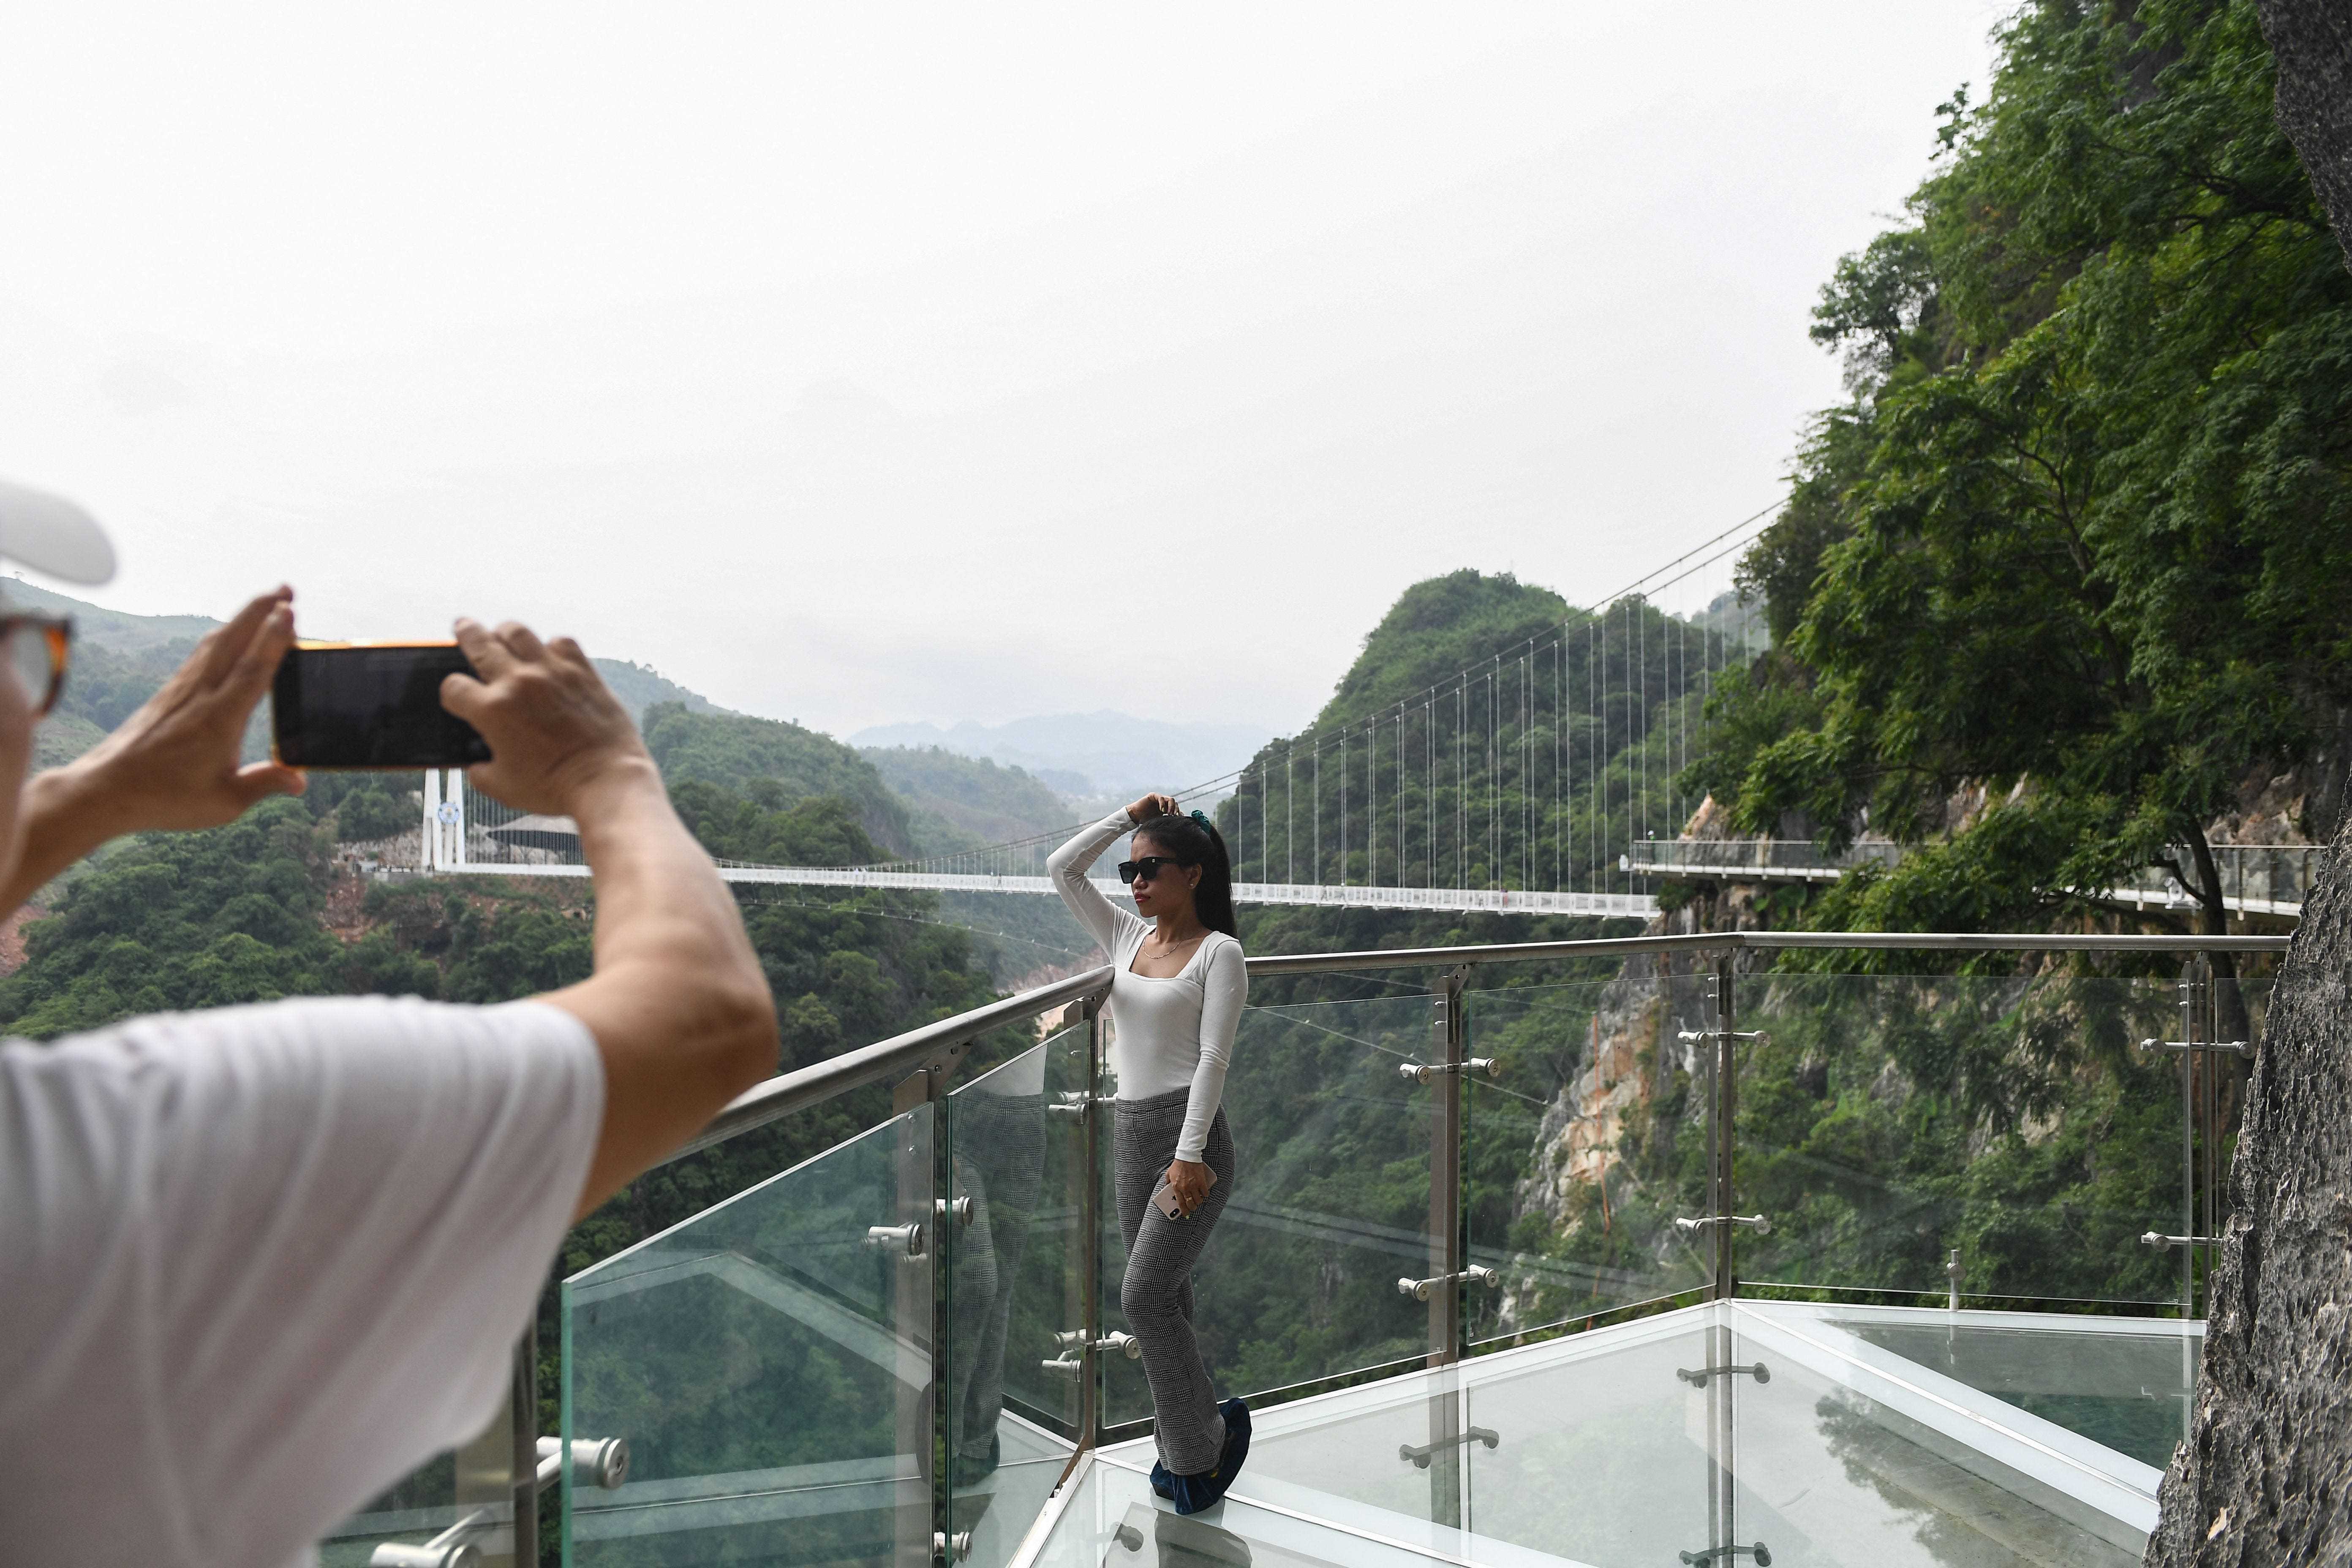 Menschen fotografieren auf der Glasbrücke Bach Long im Distrikt Moc Chau in der vietnamesischen Provinz Son La